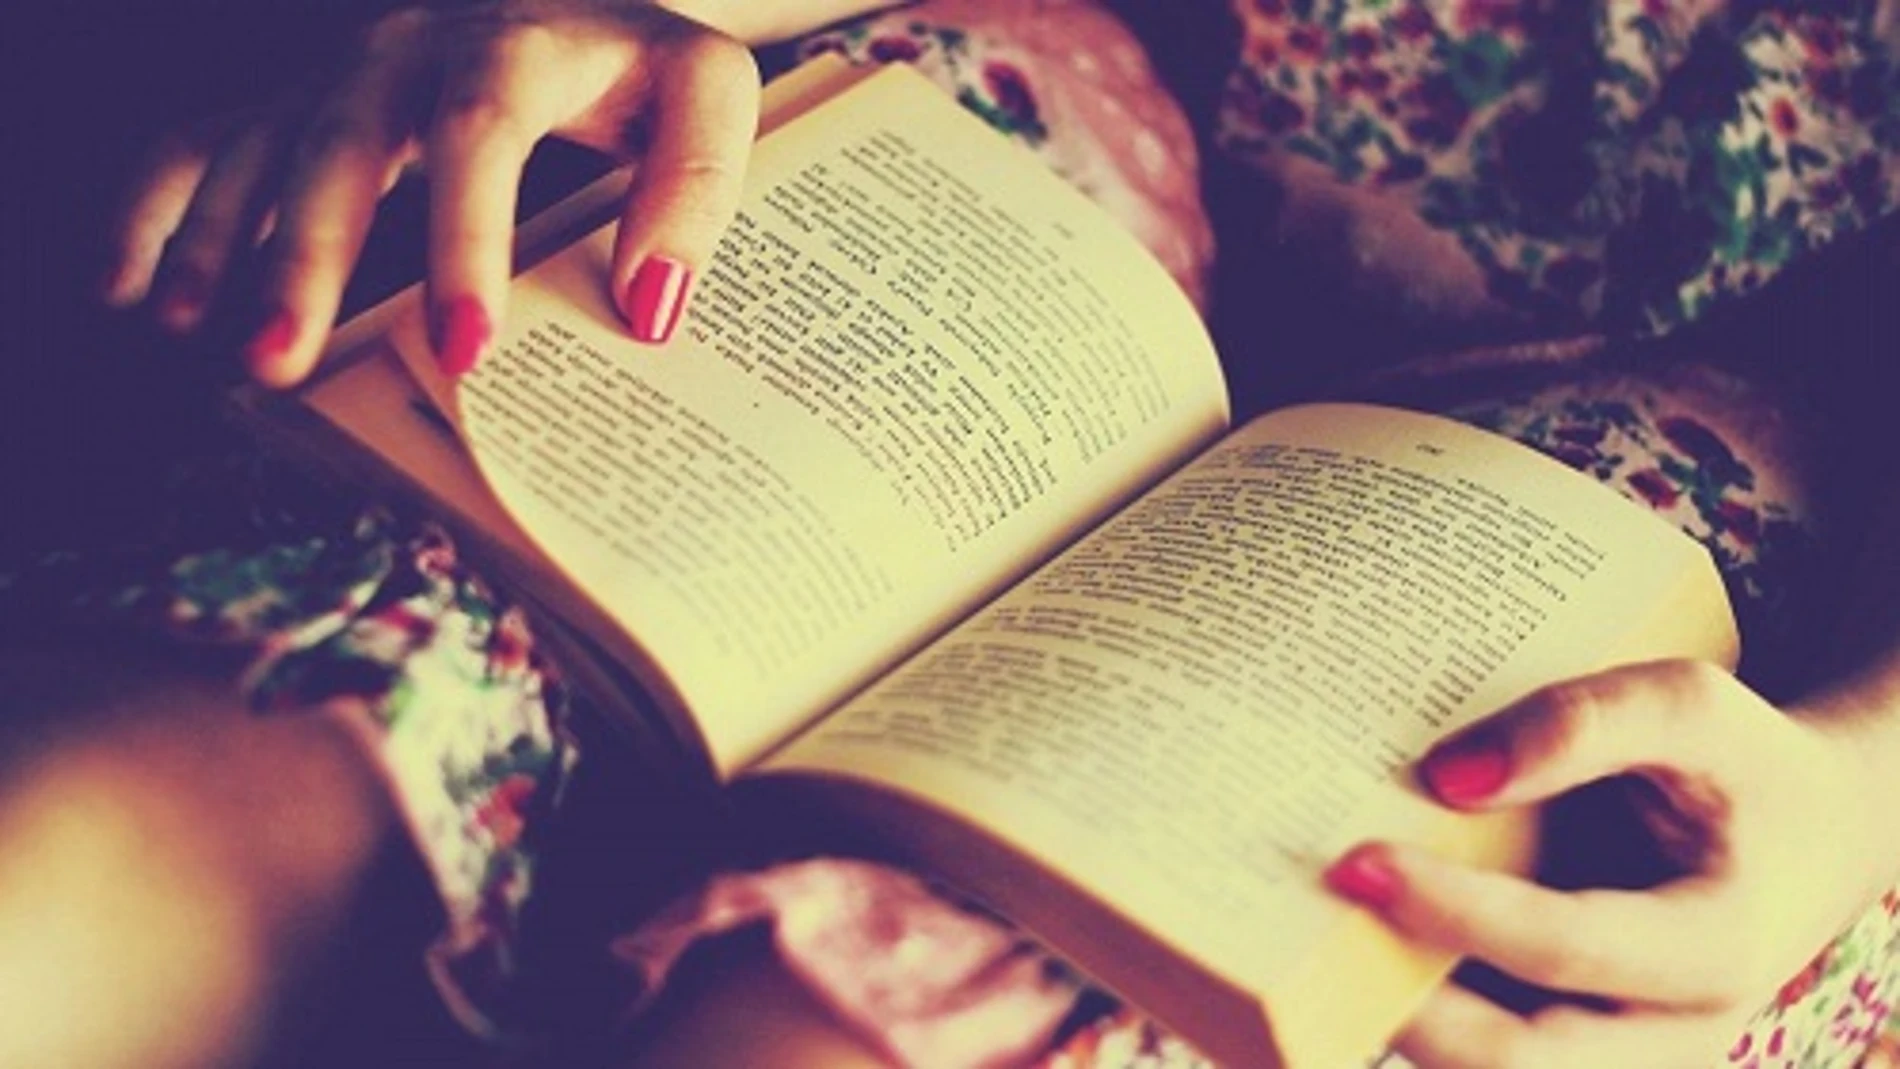 Las mujeres leen más libros que los hombres, que prefieren prensa y comics